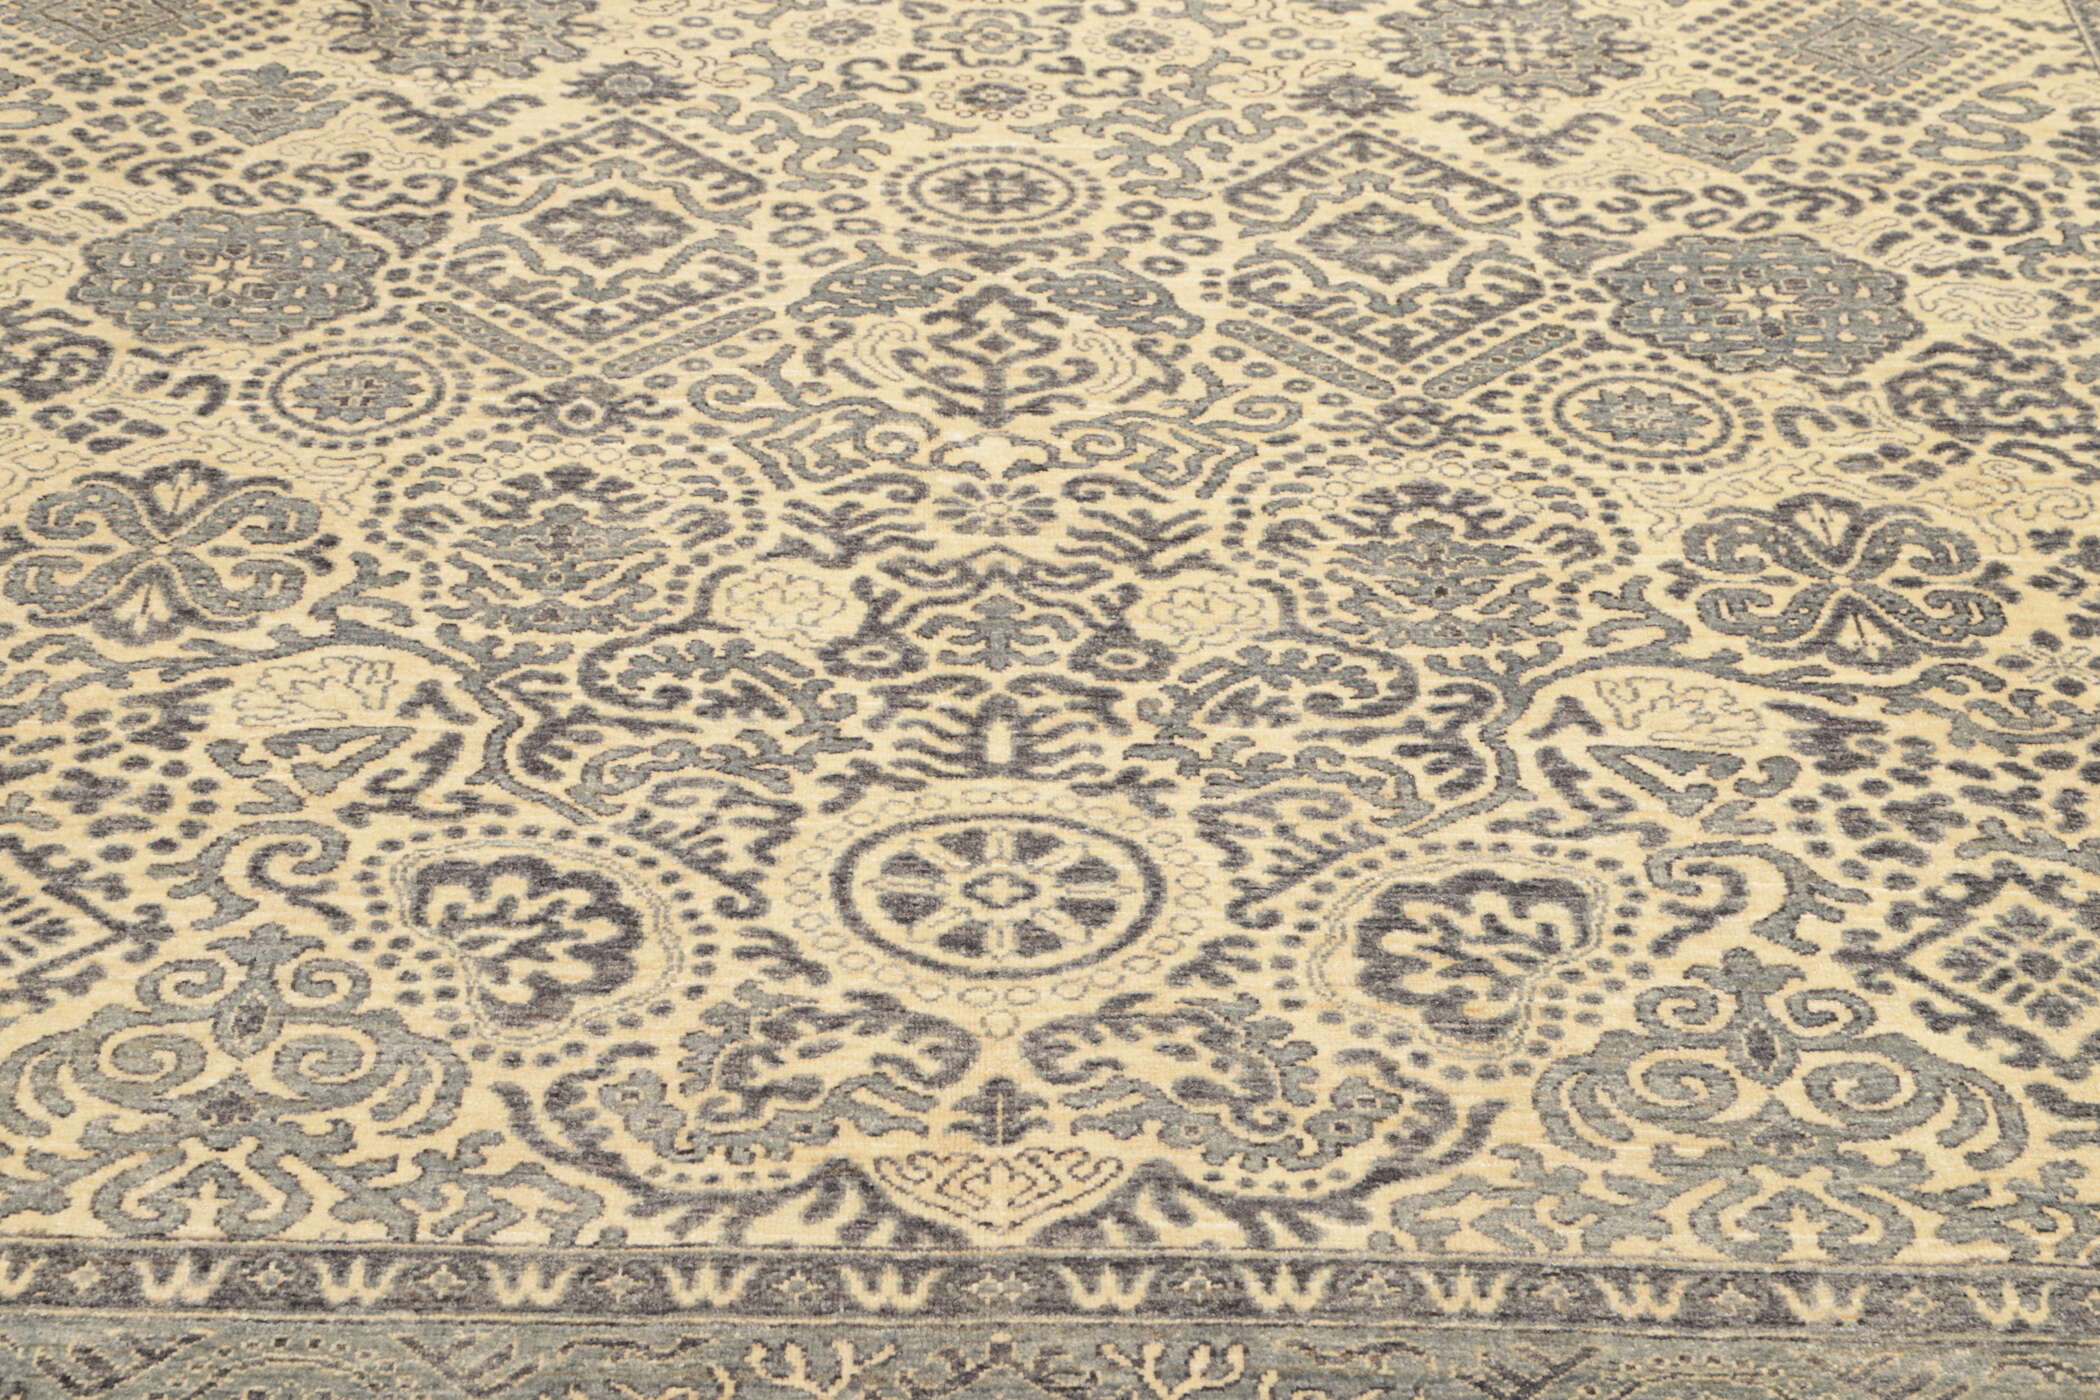 Teppich Ziegler 245 x 340 cm Orientteppich blau - beige Handgeknüpft Schurwolle